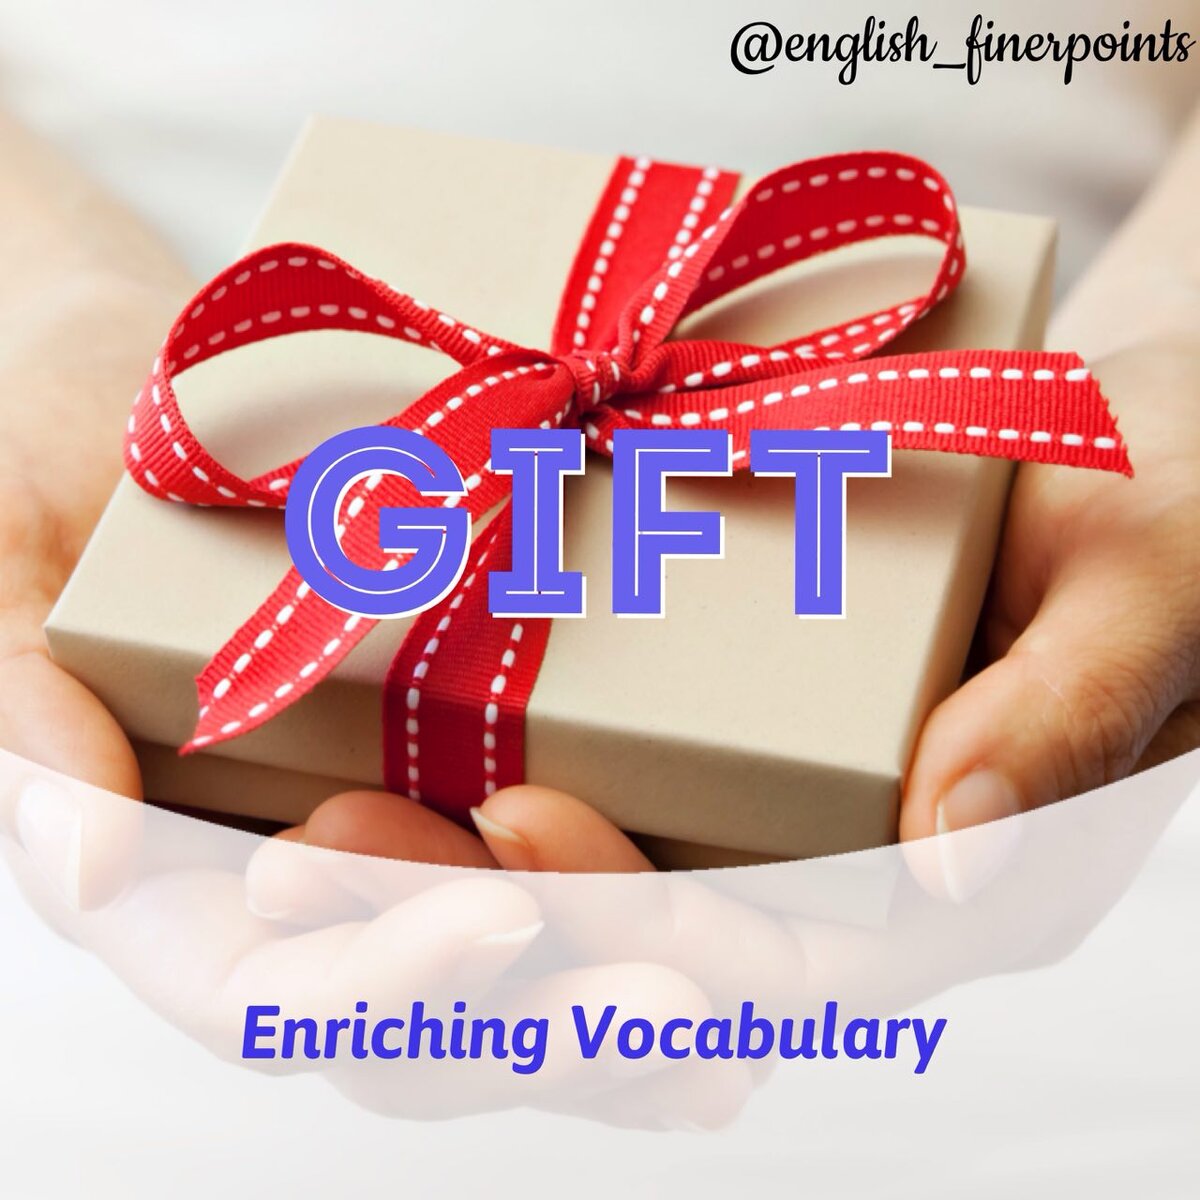 Получать подарки на английском. Подарок на английском. Подарок по английскому языку. Гифт на английском. Картинка английский в подарок.